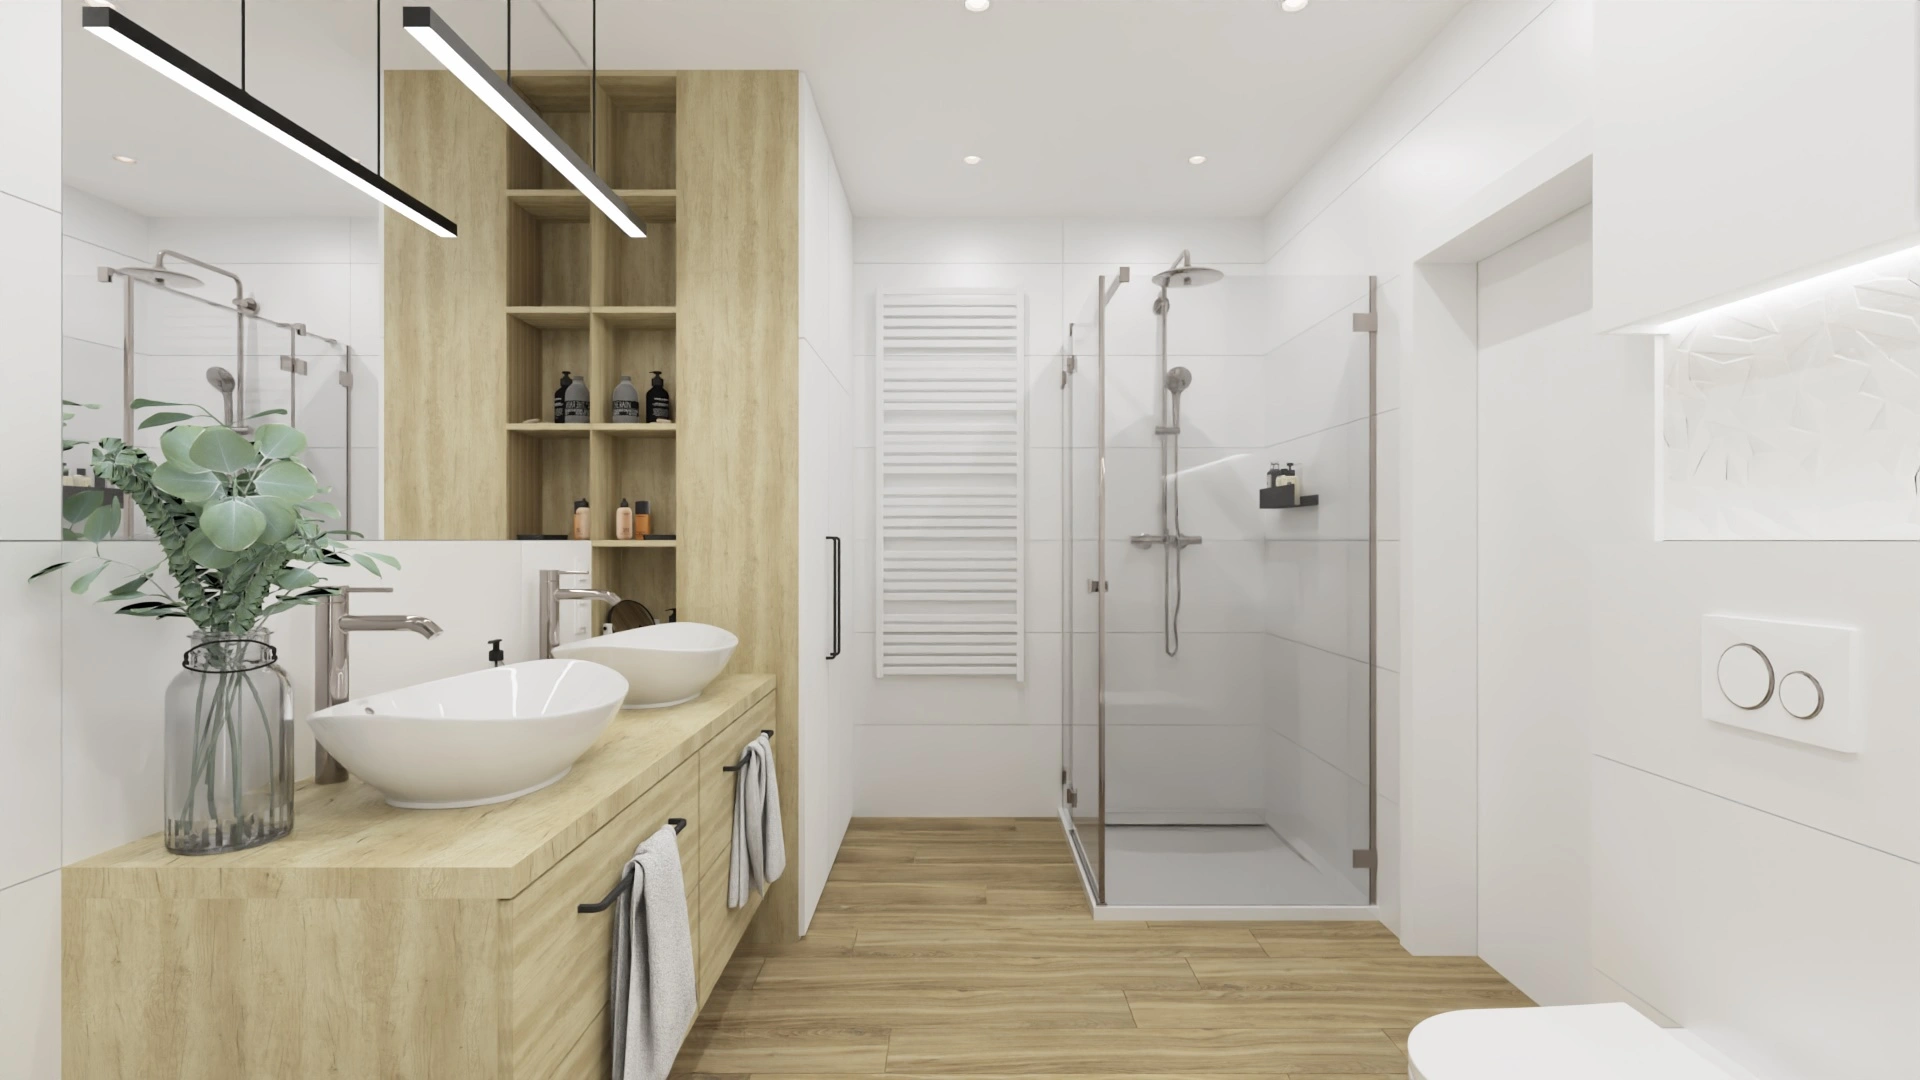 Łazienka w kolorze białym z szafką łazienkową, styl skandynawski. Element charakterystyczny: szafka łazienkowa